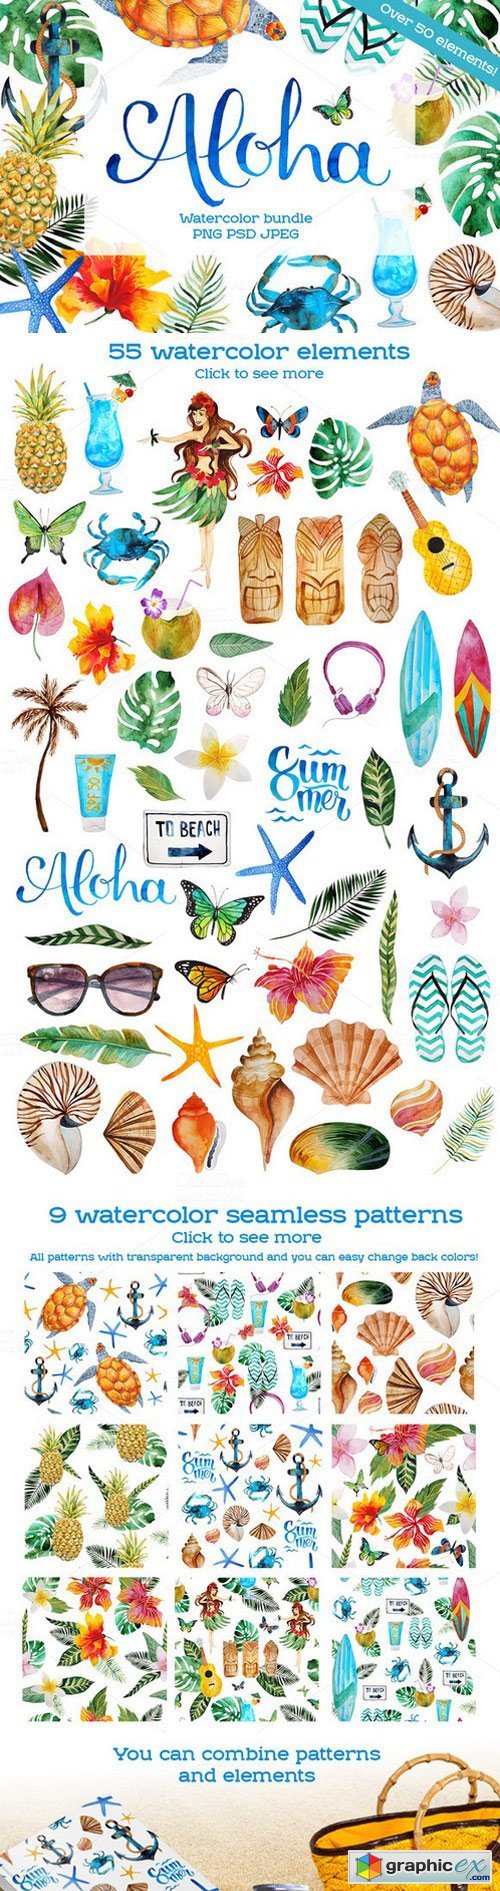 Aloha - watercolor bundle